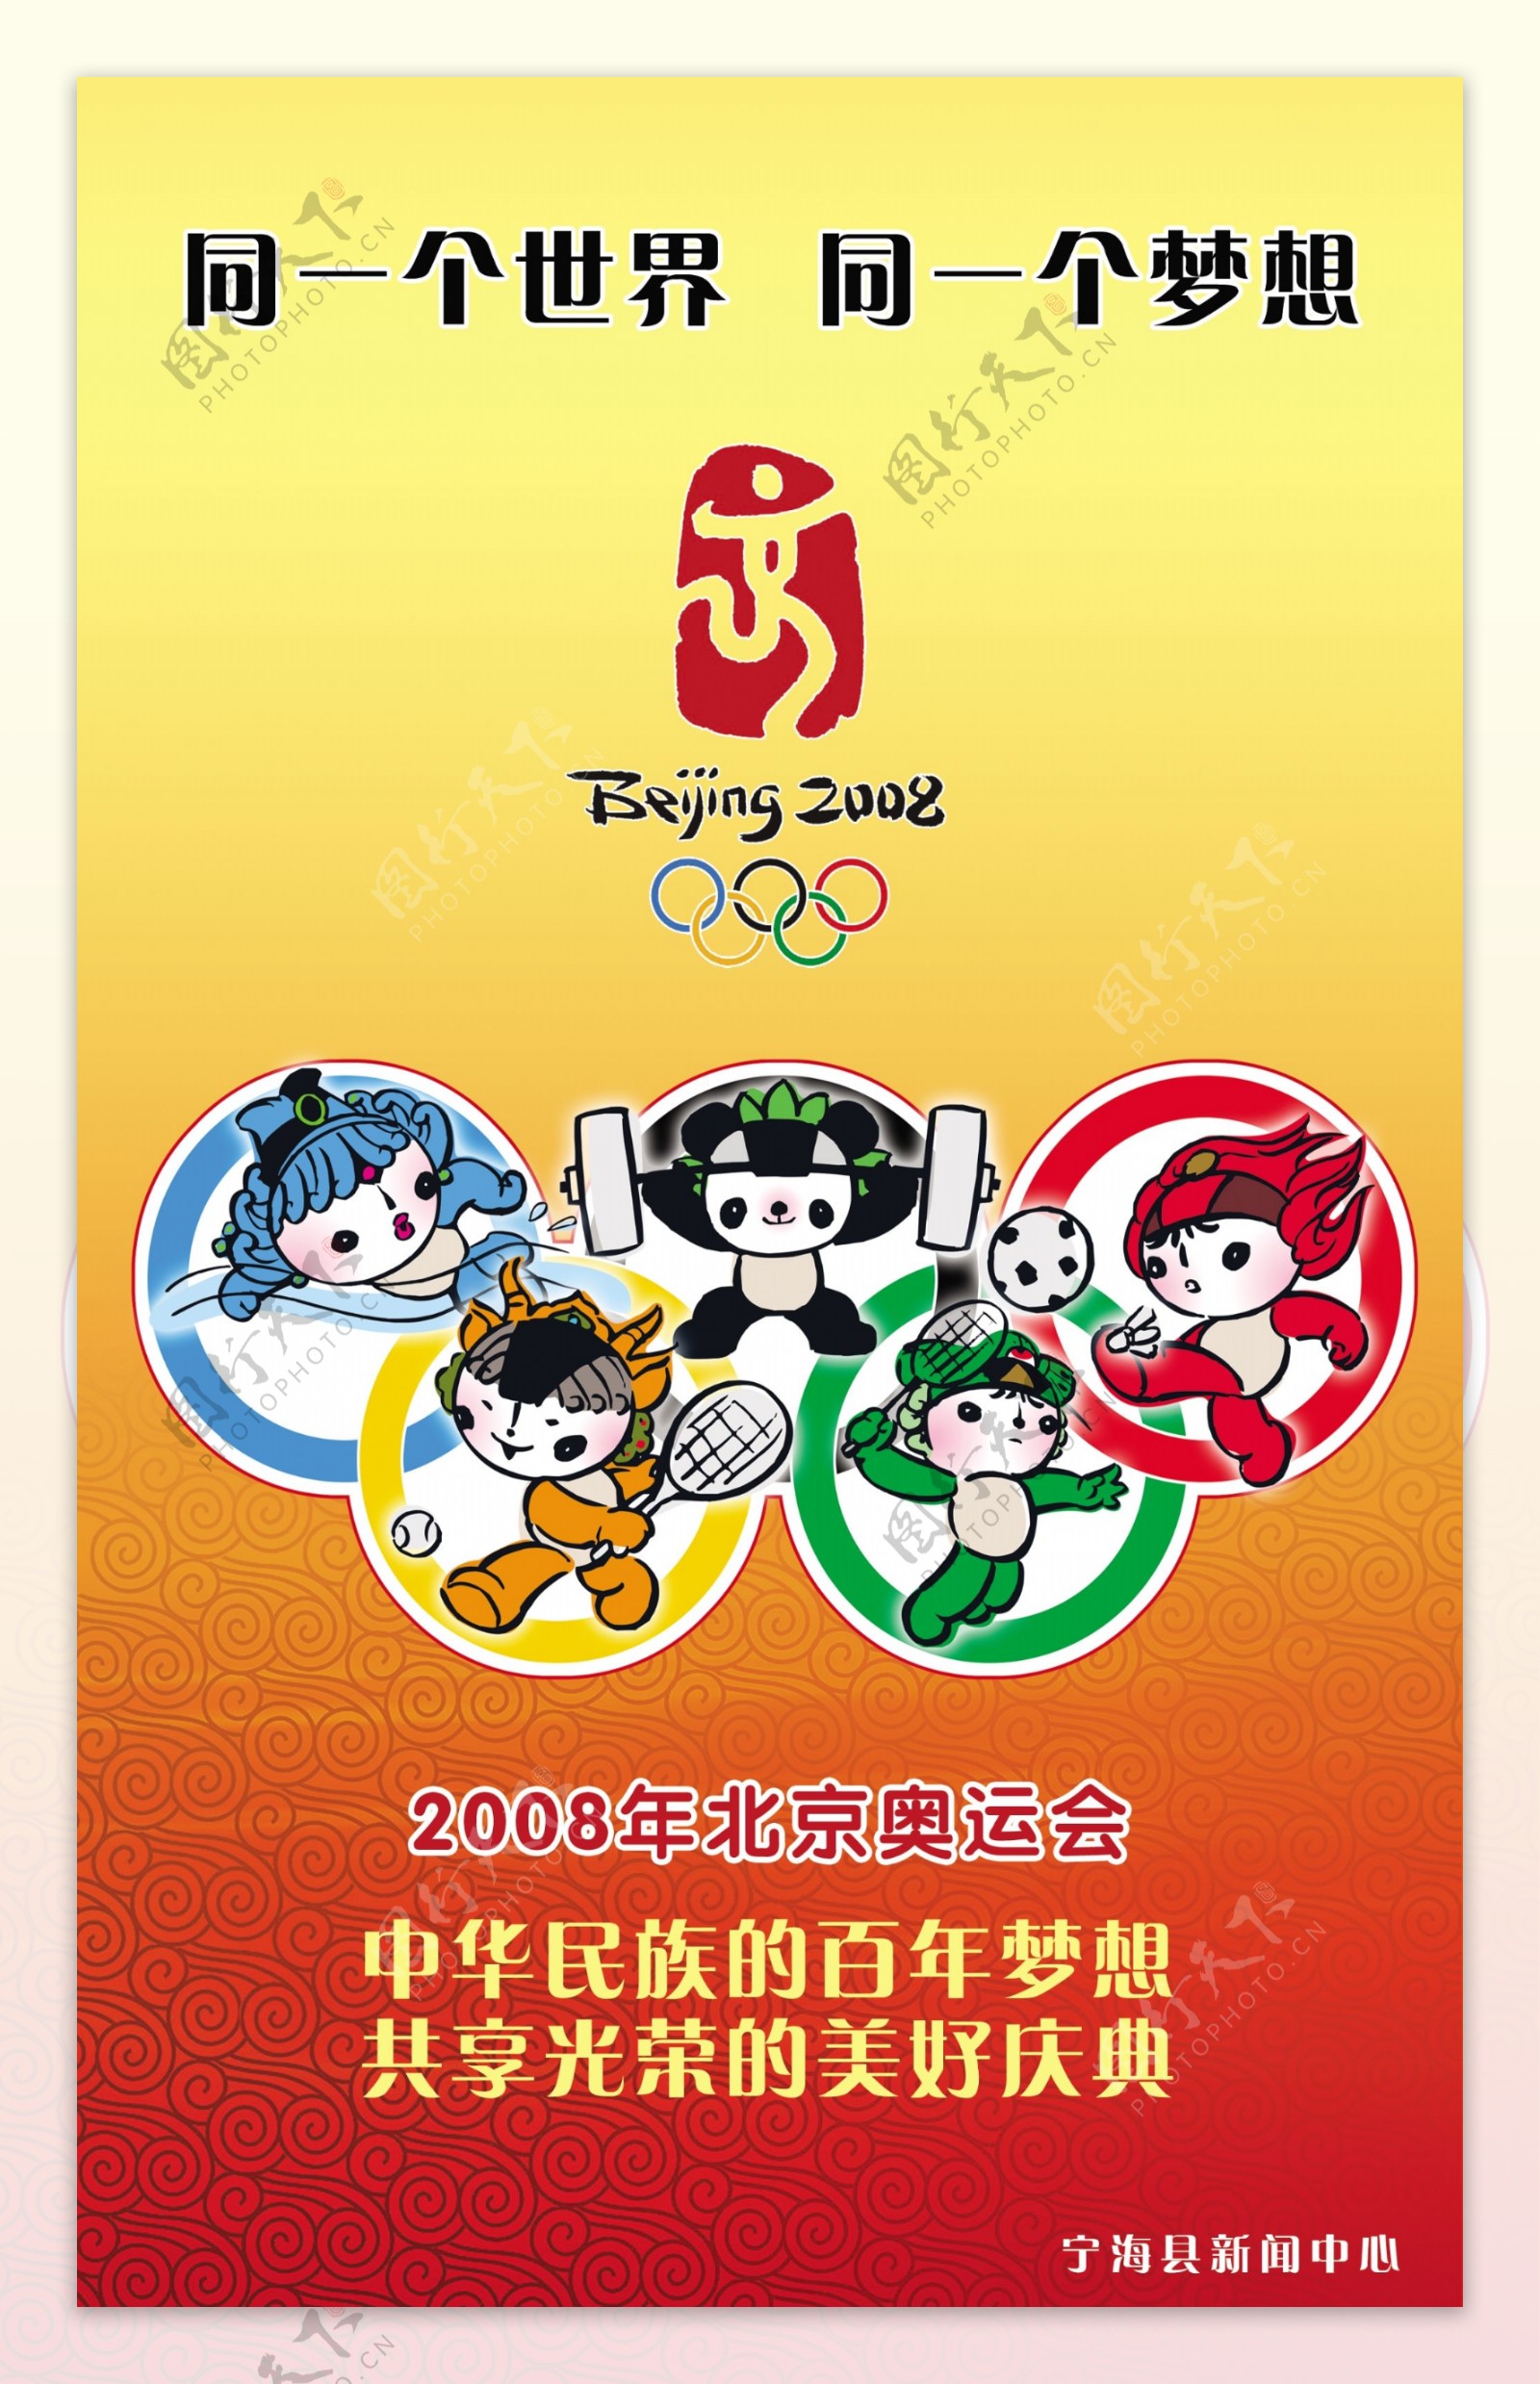 奥运公益广告图片